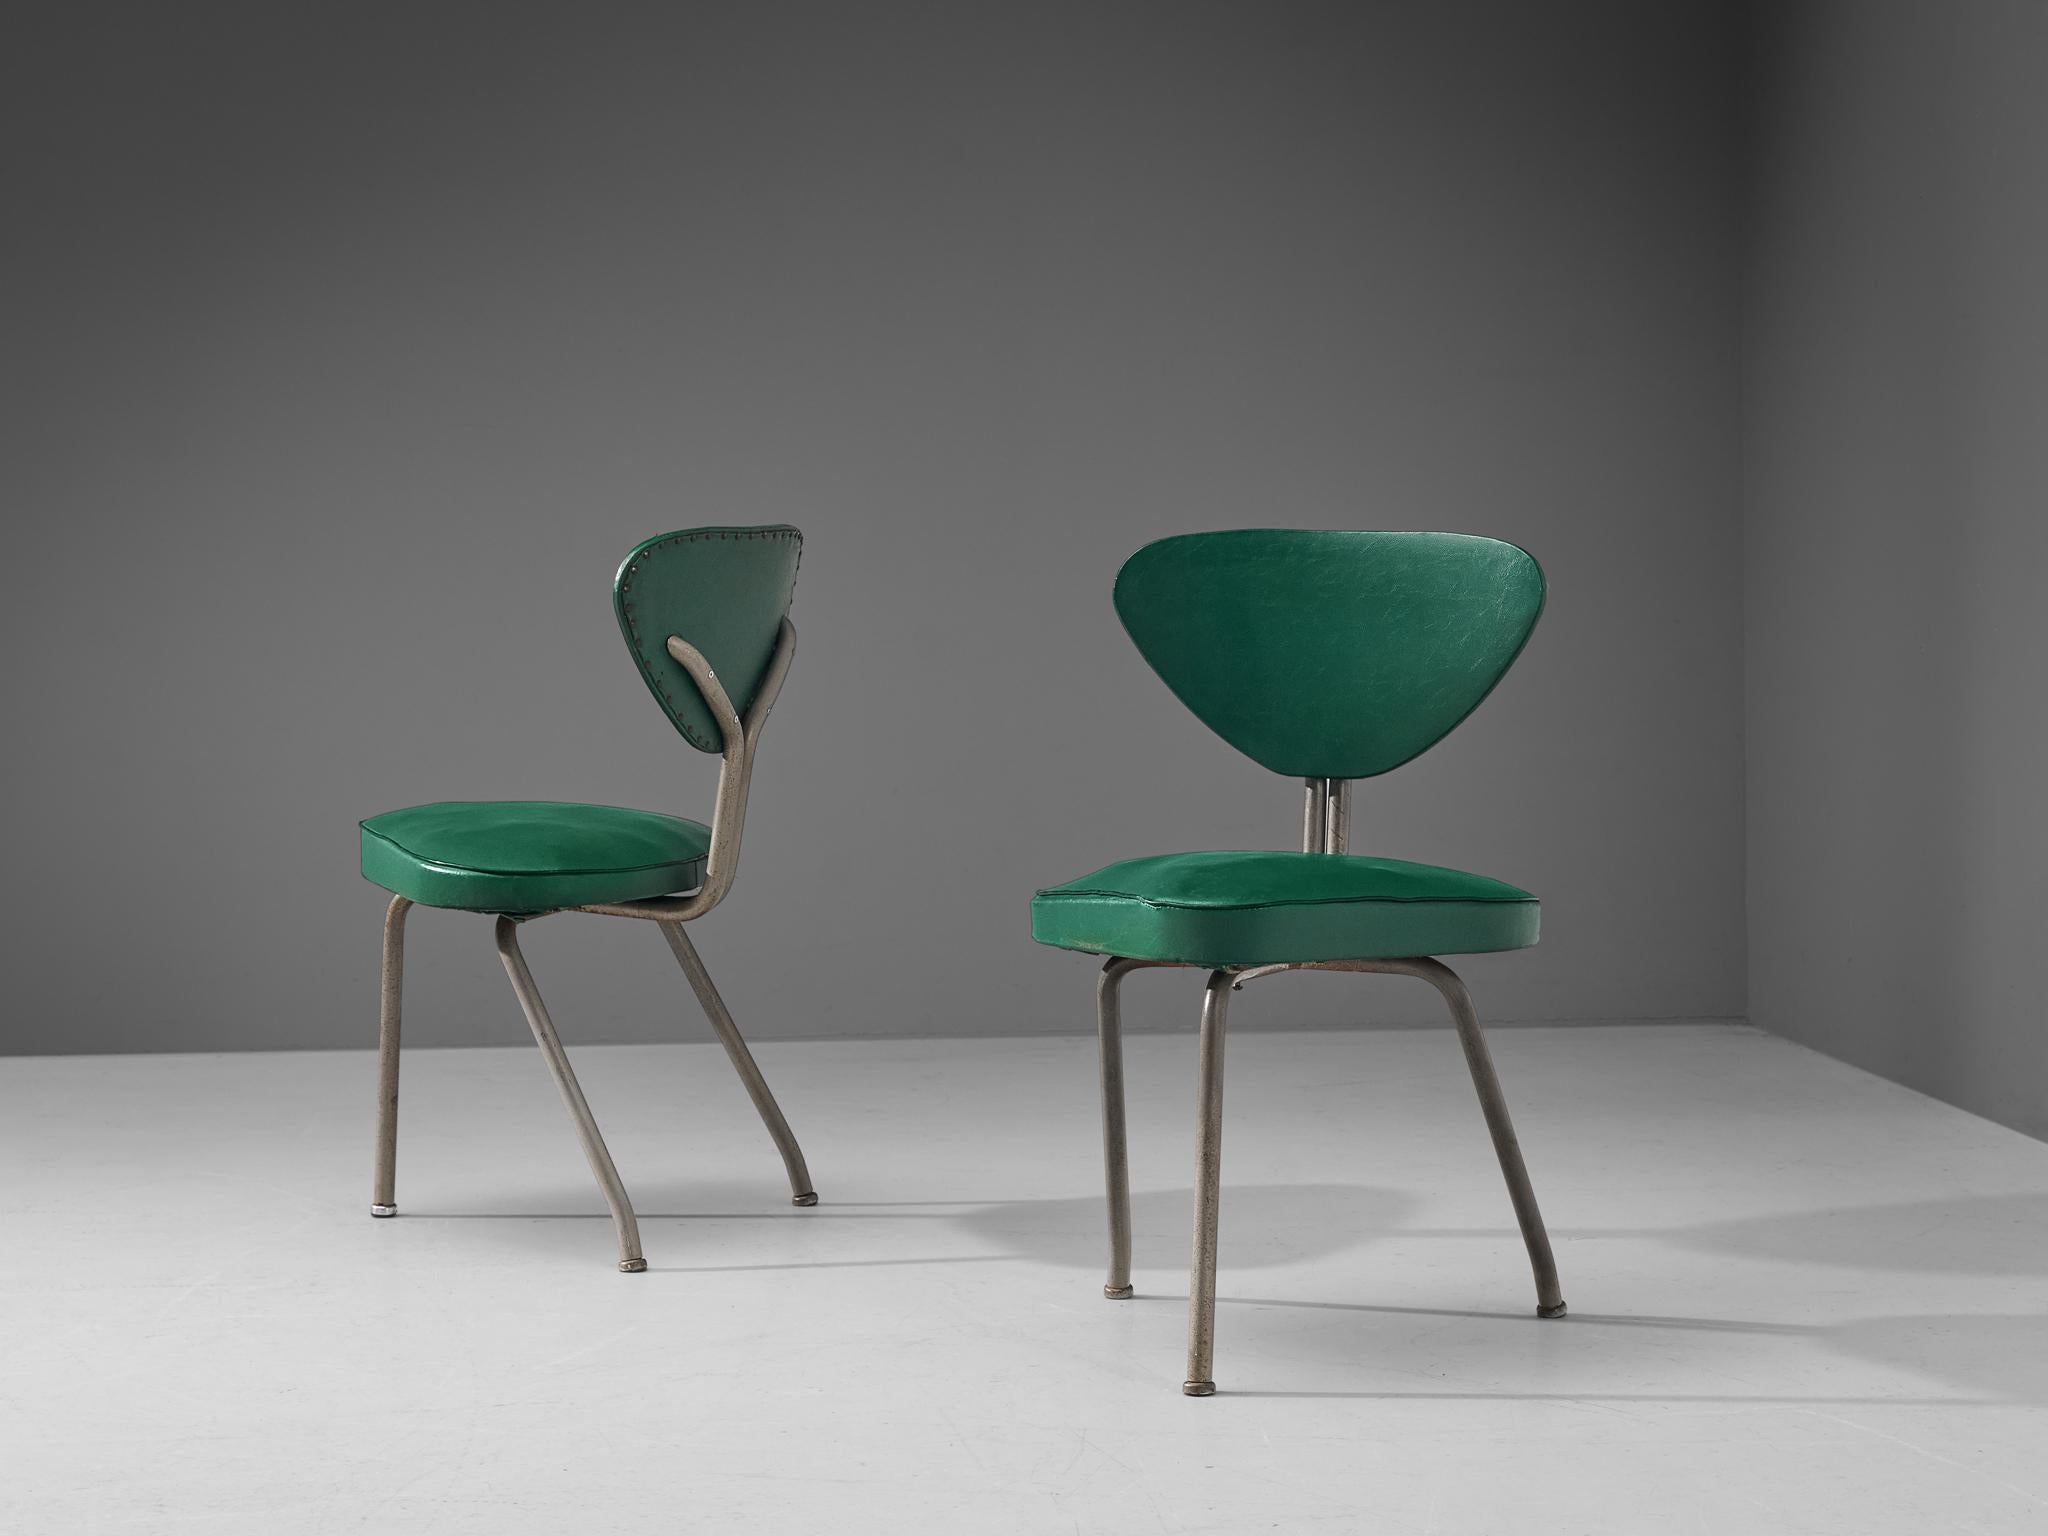 Paar Dreibeinstühle, Stahl, grünes Kunstleder, Eisen, Europa, 1960er Jahre. 

Ein Paar bescheidene Dreibeinstühle aus grünem Kunstleder. Diese Stühle haben eine klare geometrische Form. Beachten Sie zum Beispiel die dreieckige Form von Sitzfläche